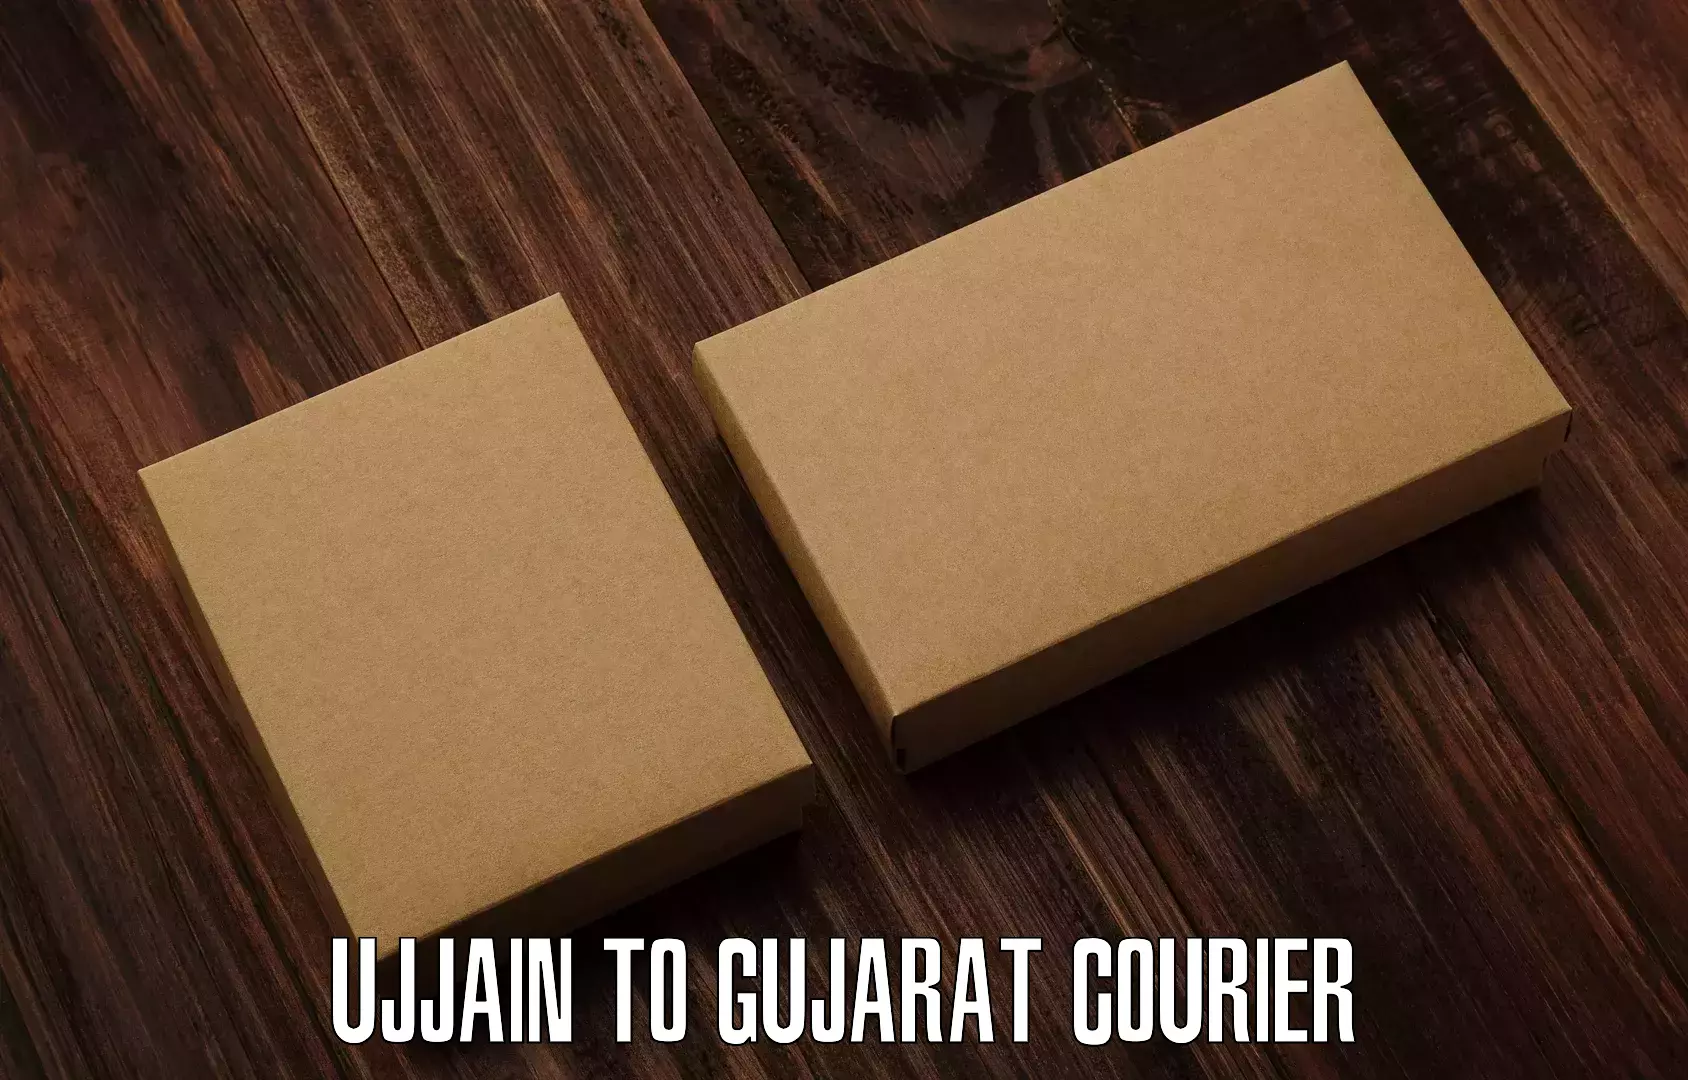 Express courier facilities Ujjain to NIT Surat